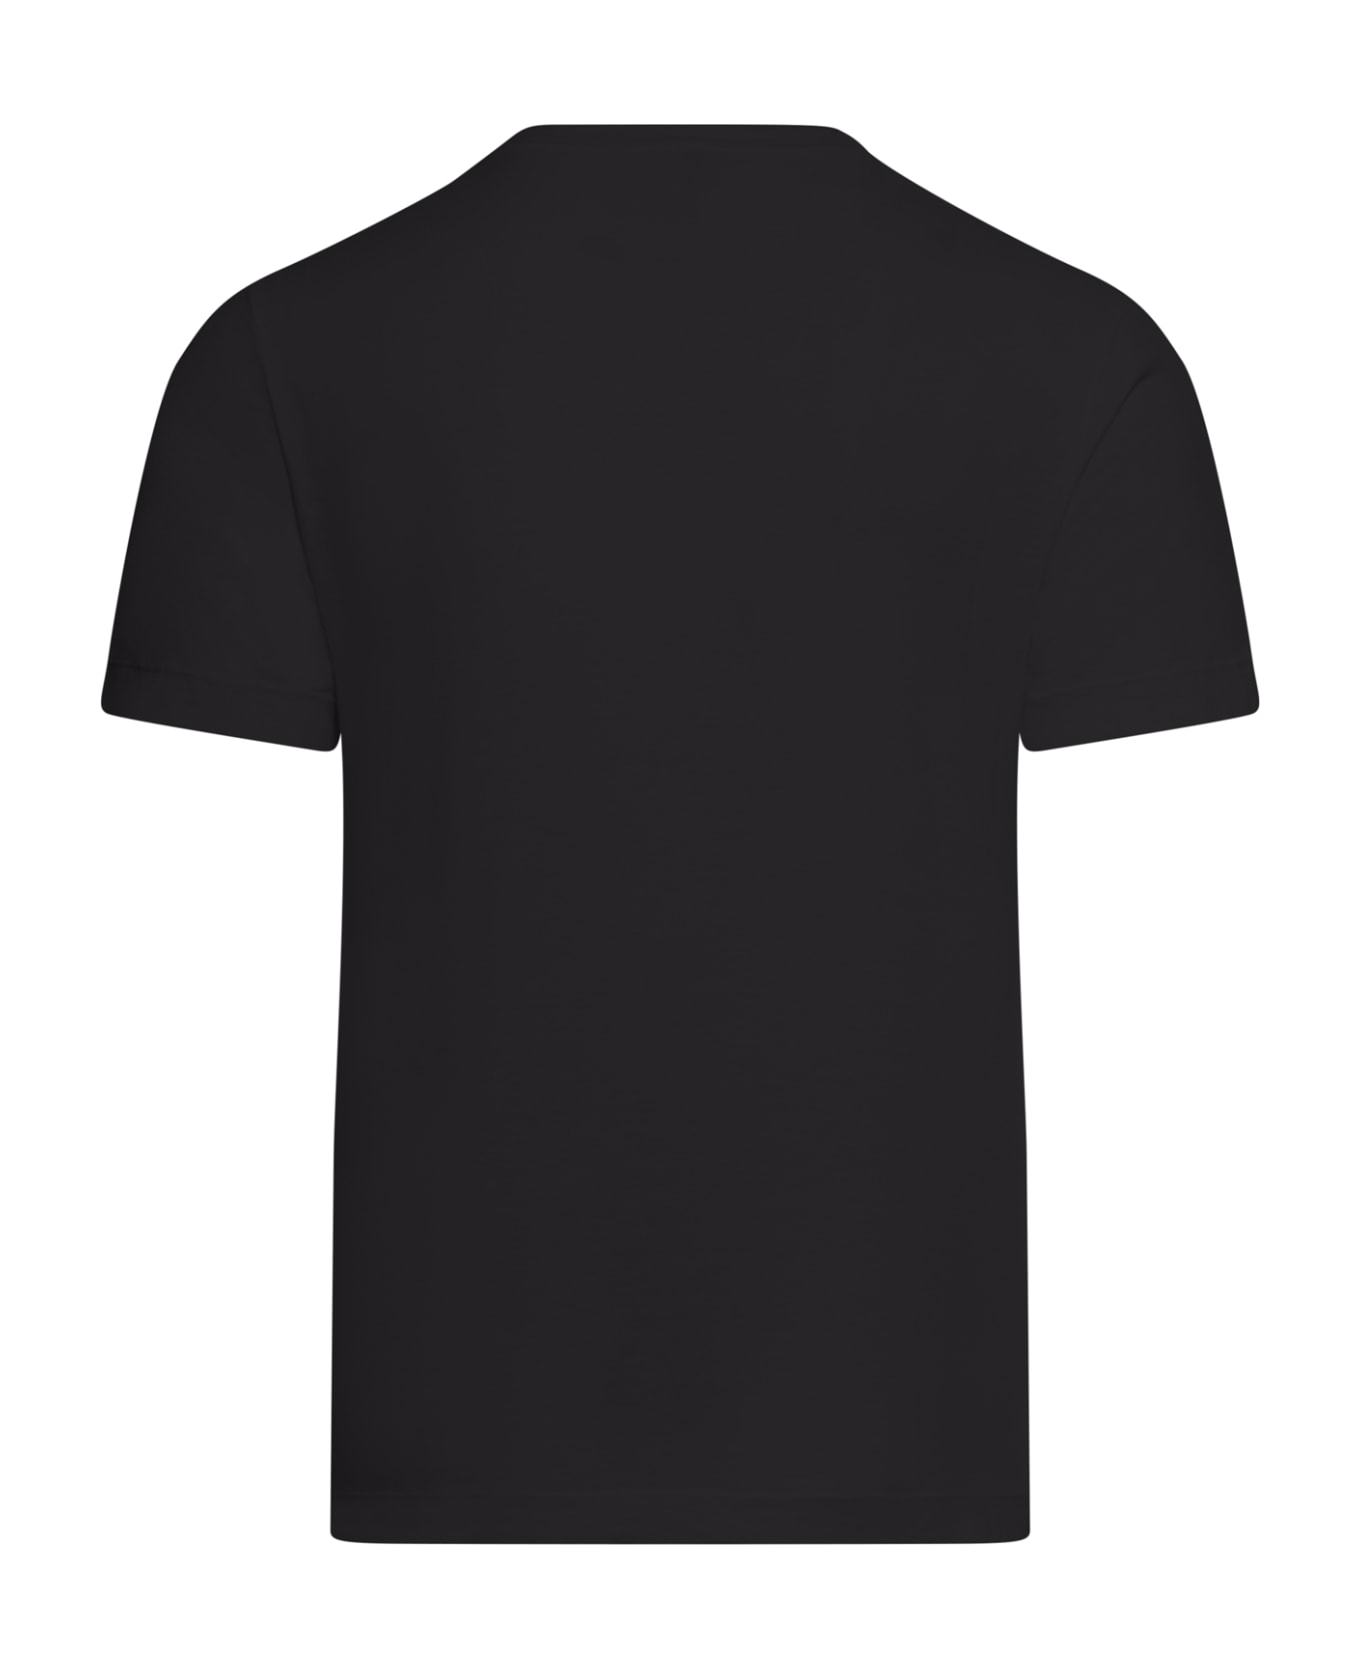 Transit Tshirt - Black シャツ